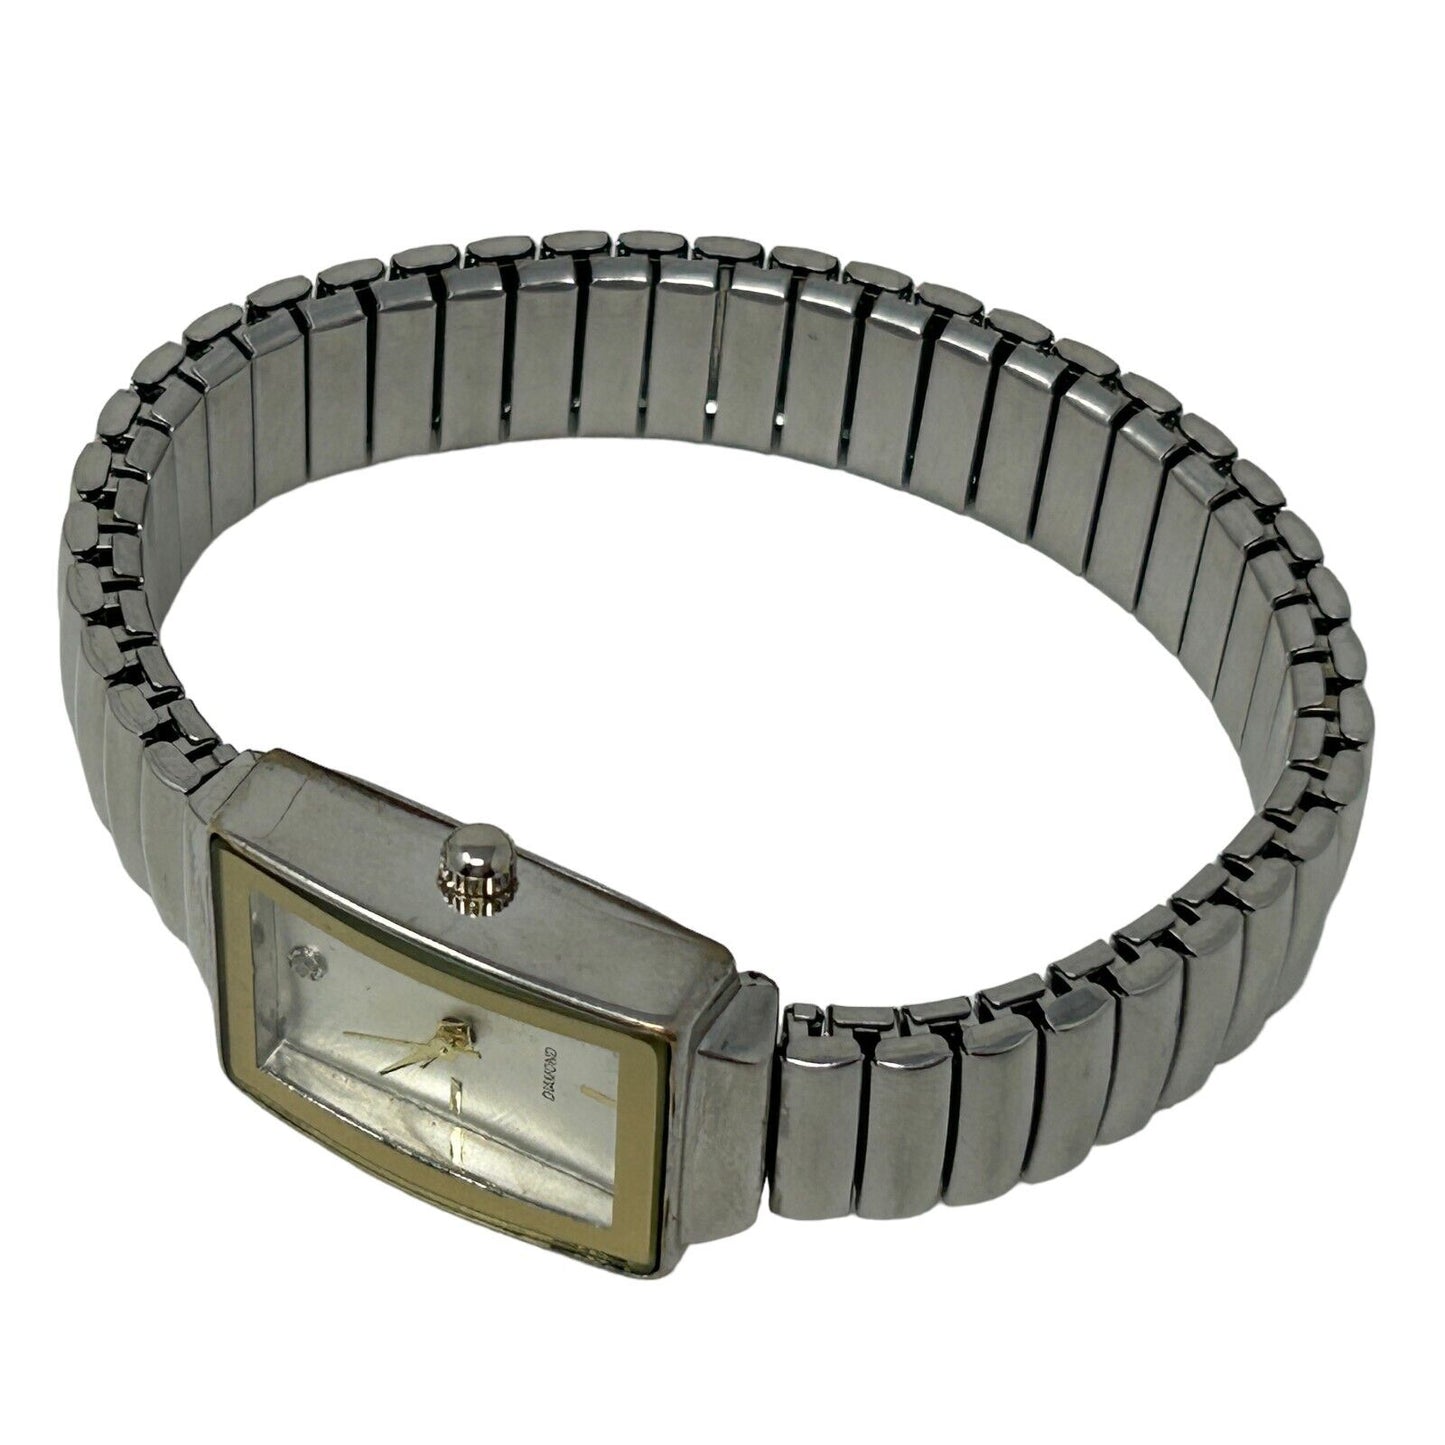 Diamond Brand Womens Wristwatch Silver Bracelet Band Analog 12 Hour Dial